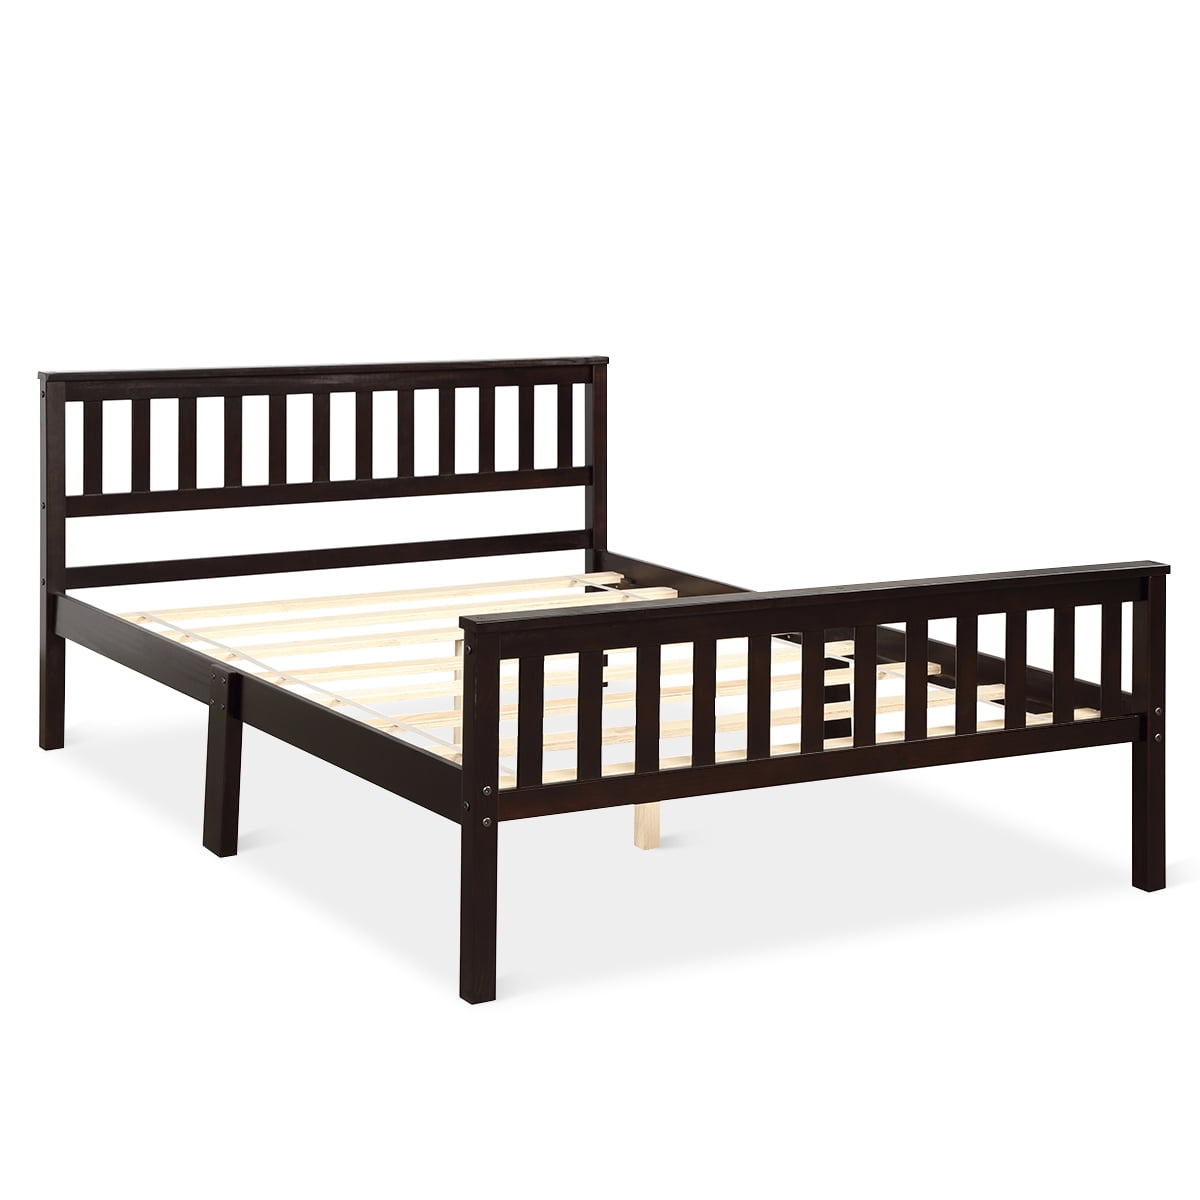 Topbuy Wood Bed Frame Wooden Slat Support Platform W/ Headboard Twin Size 